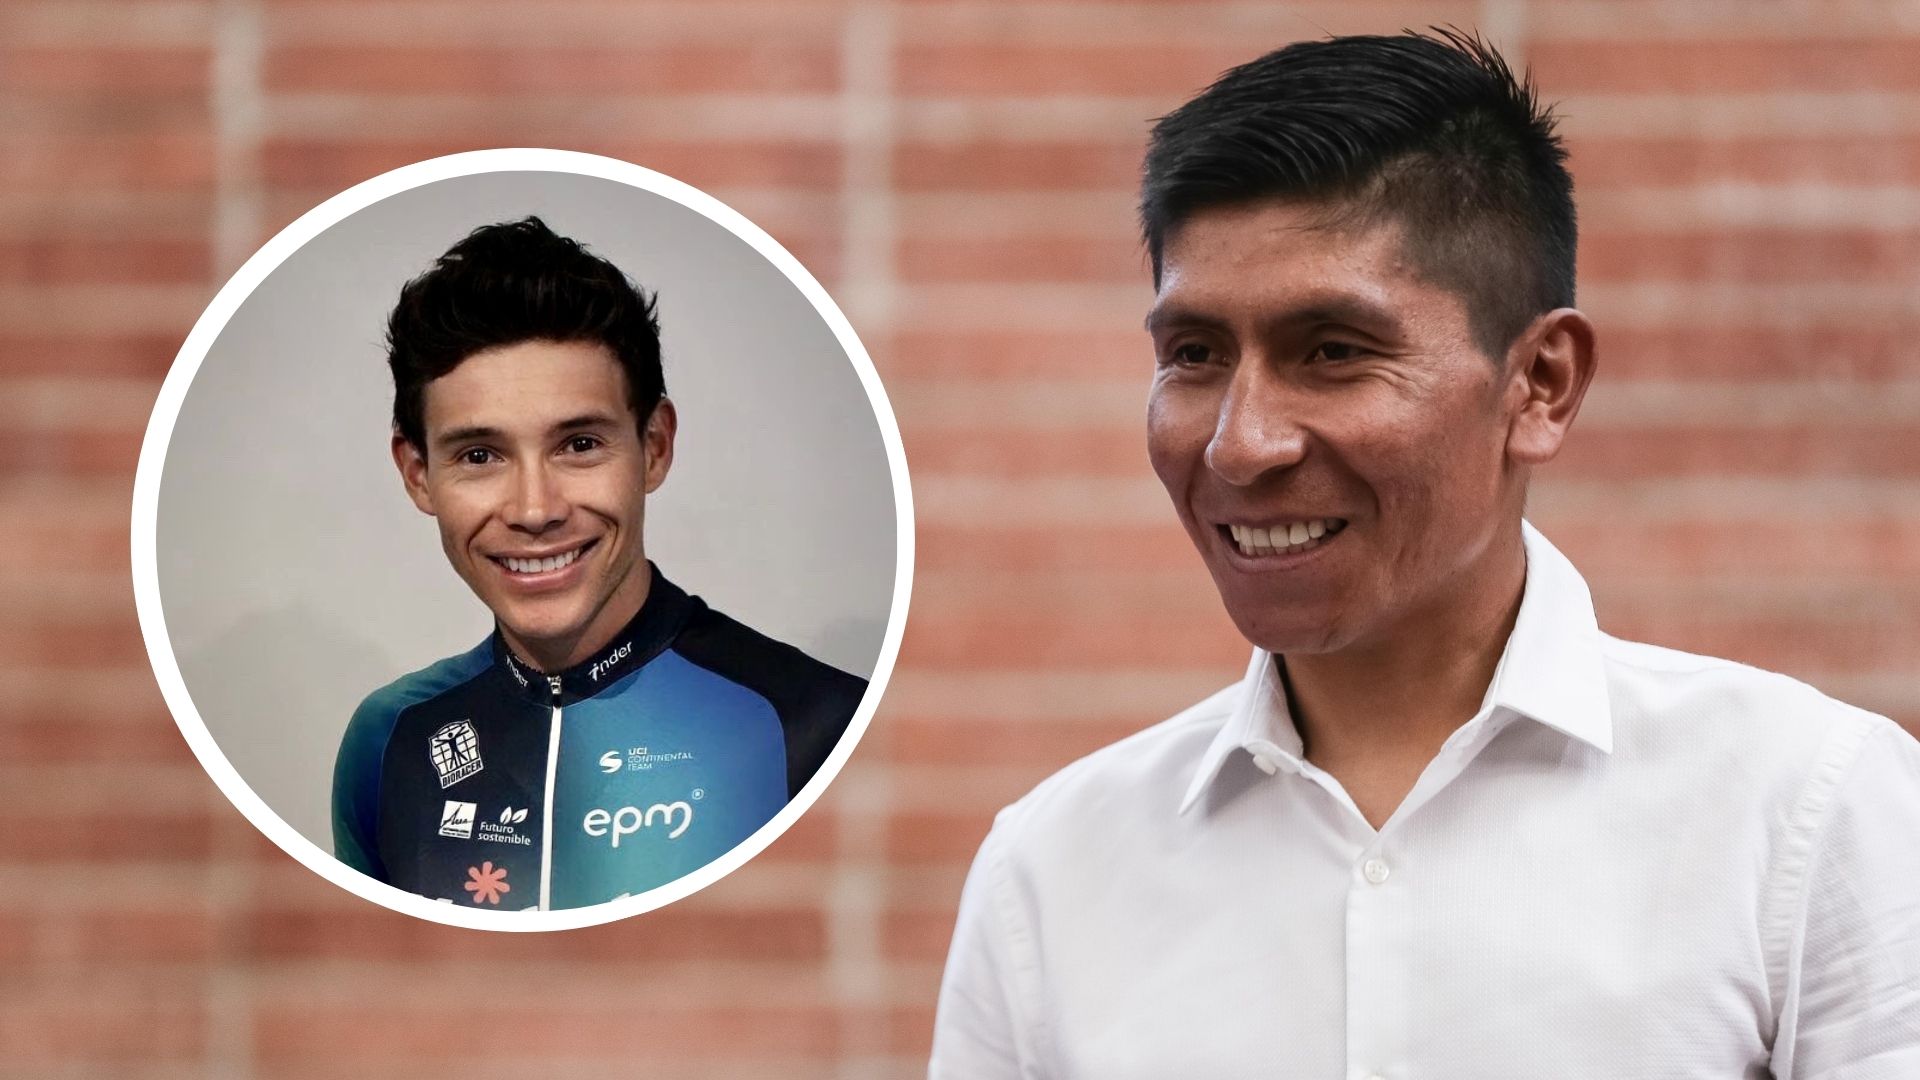 El corredor del Team Medellín resaltó la decisión del pedalista de Cómbita y afirmó que los dos han sido víctimas de injusticias. Team Medellín - Colprensa